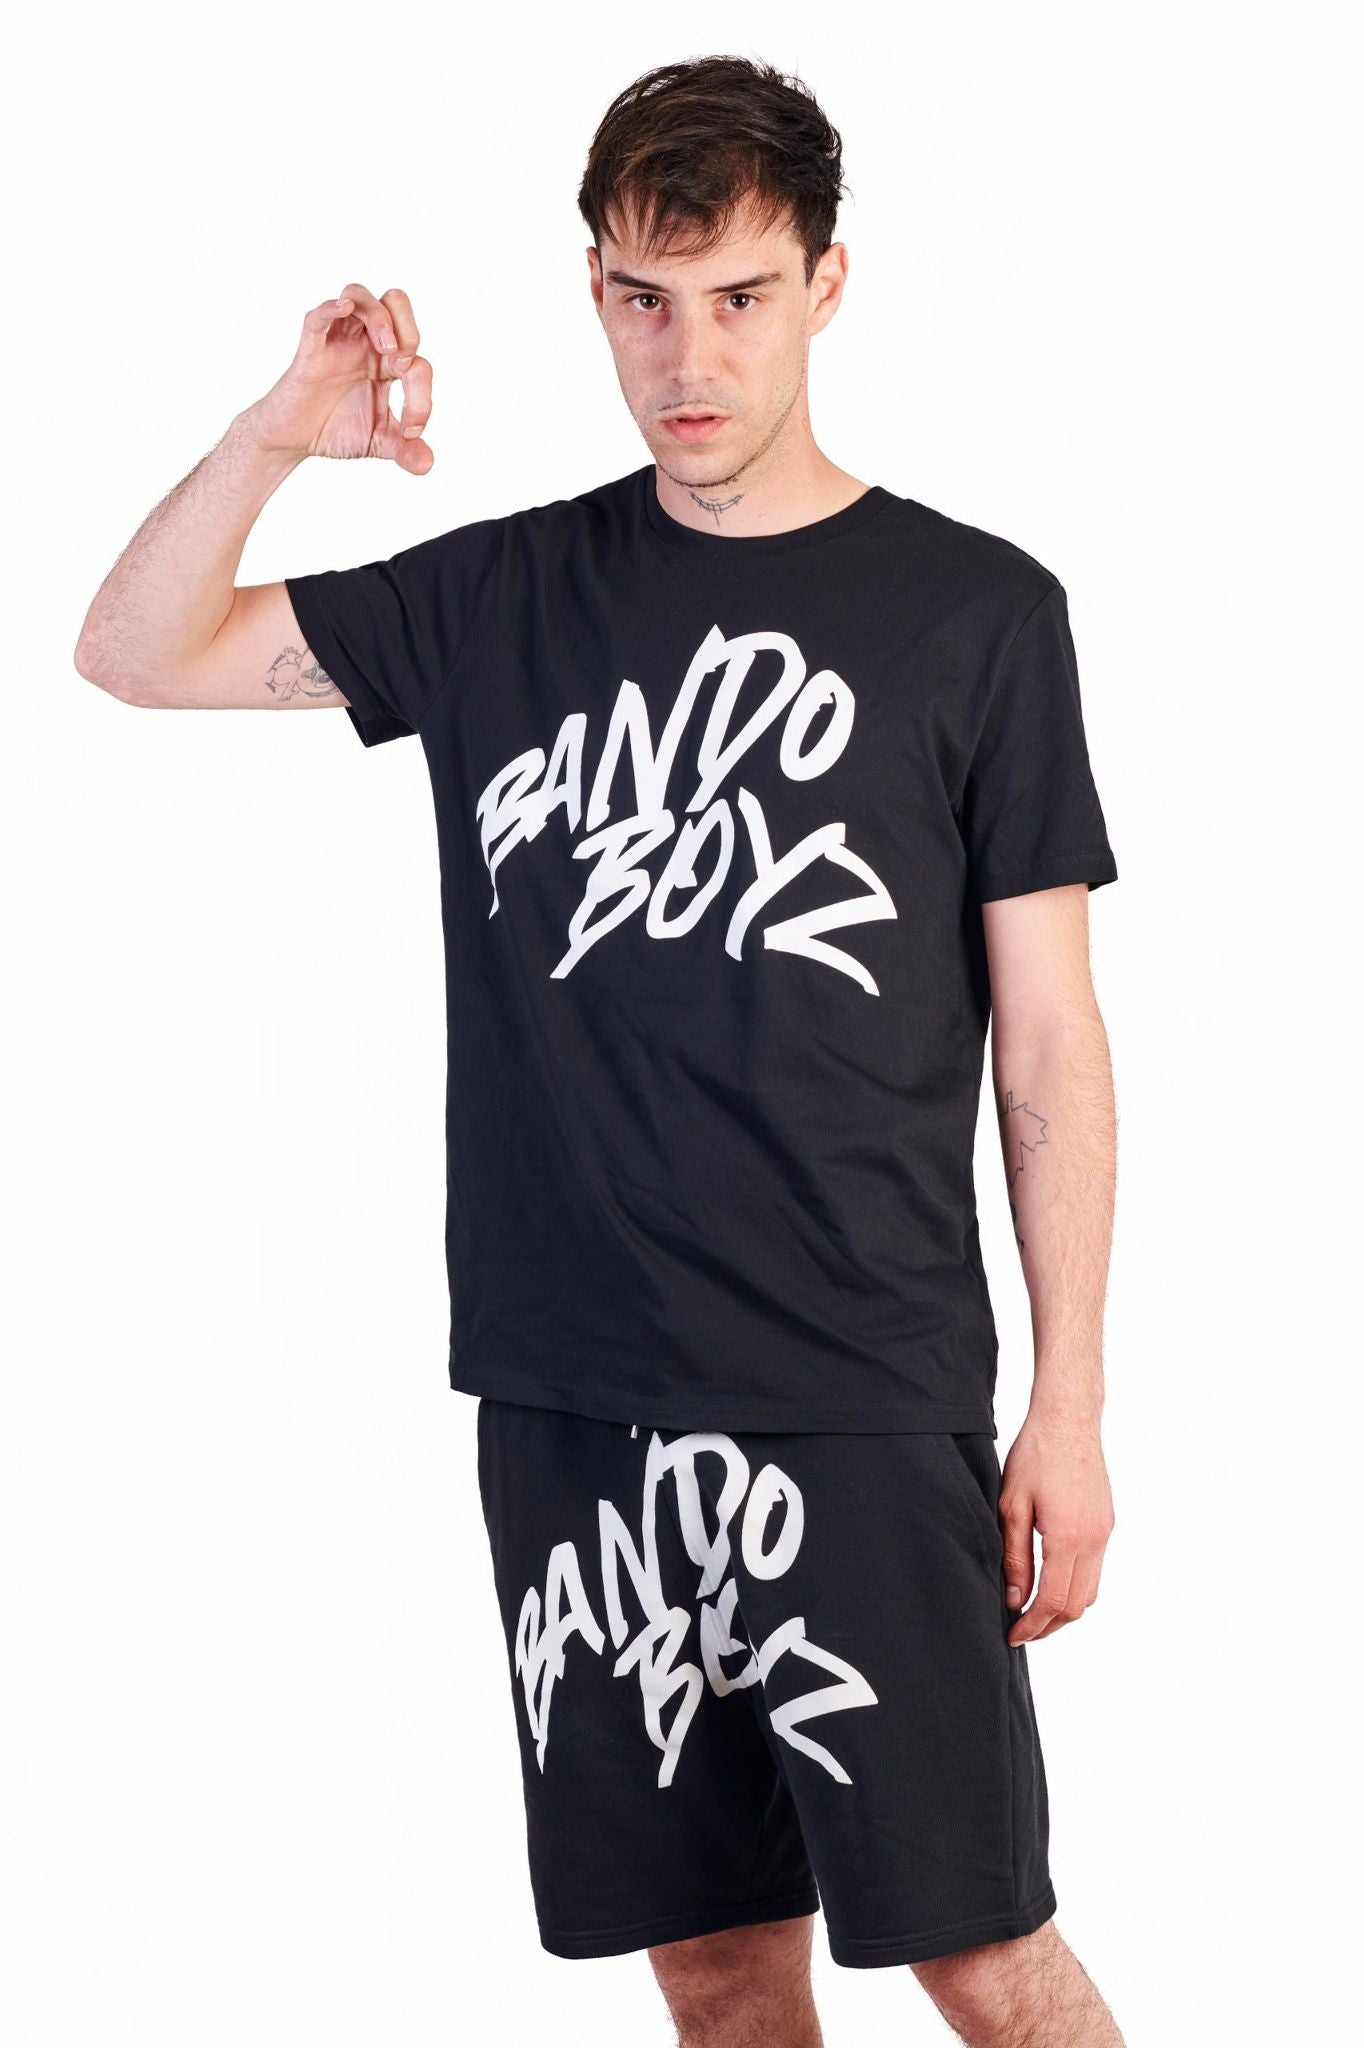 Camiseta Bando Boyz